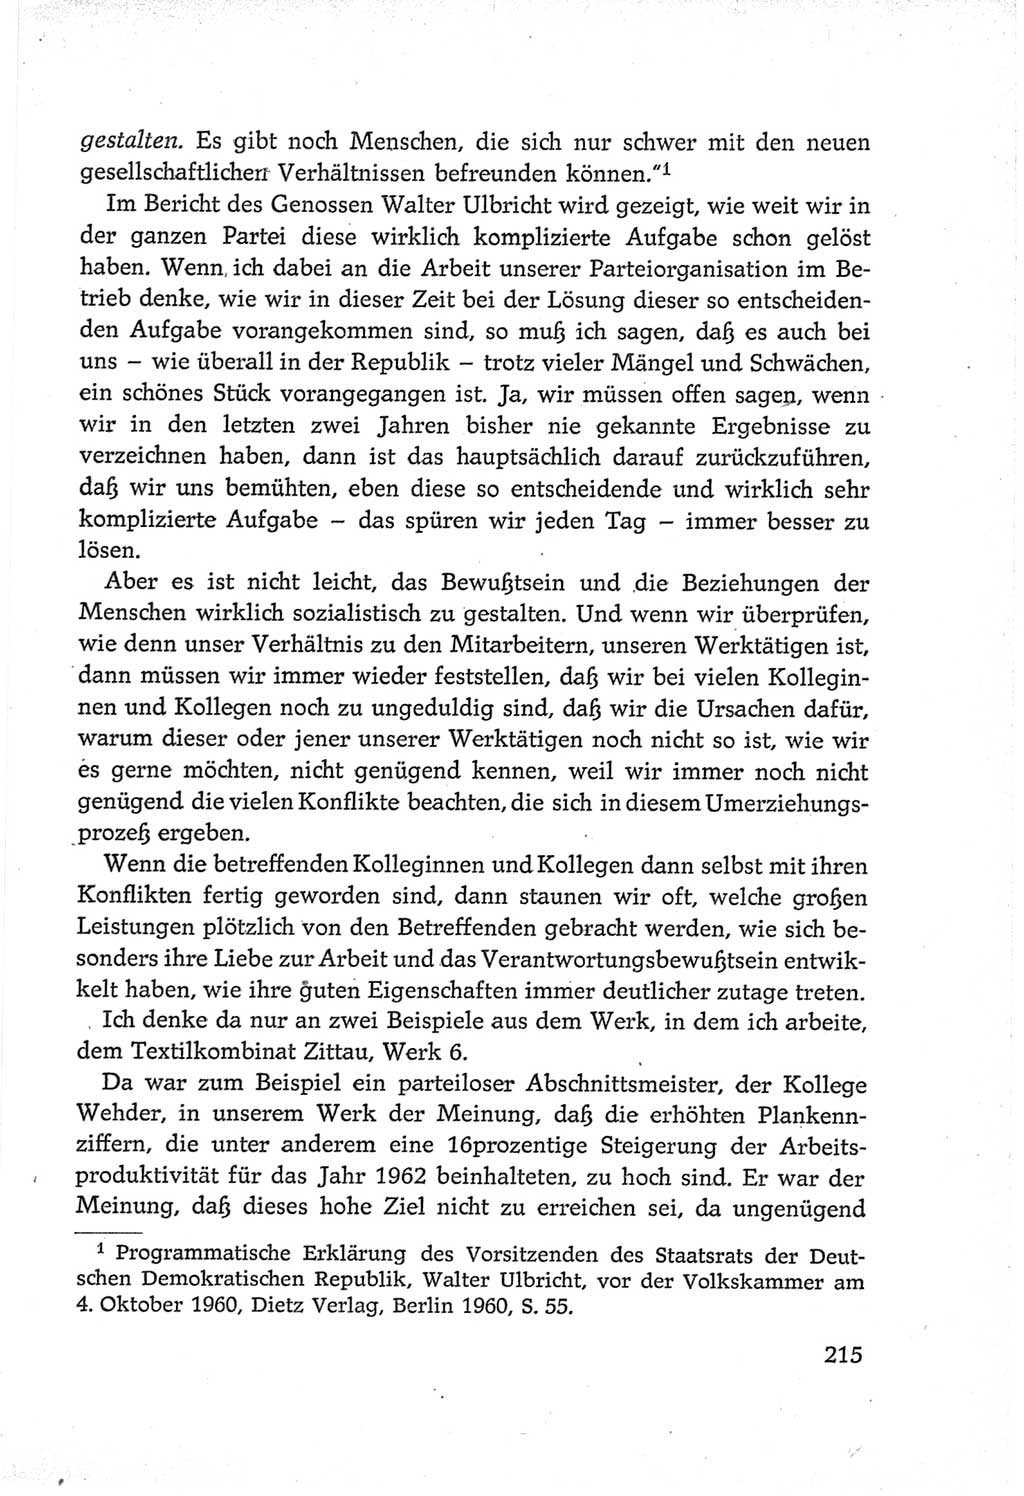 Protokoll der Verhandlungen des Ⅵ. Parteitages der Sozialistischen Einheitspartei Deutschlands (SED) [Deutsche Demokratische Republik (DDR)] 1963, Band Ⅲ, Seite 215 (Prot. Verh. Ⅵ. PT SED DDR 1963, Bd. Ⅲ, S. 215)